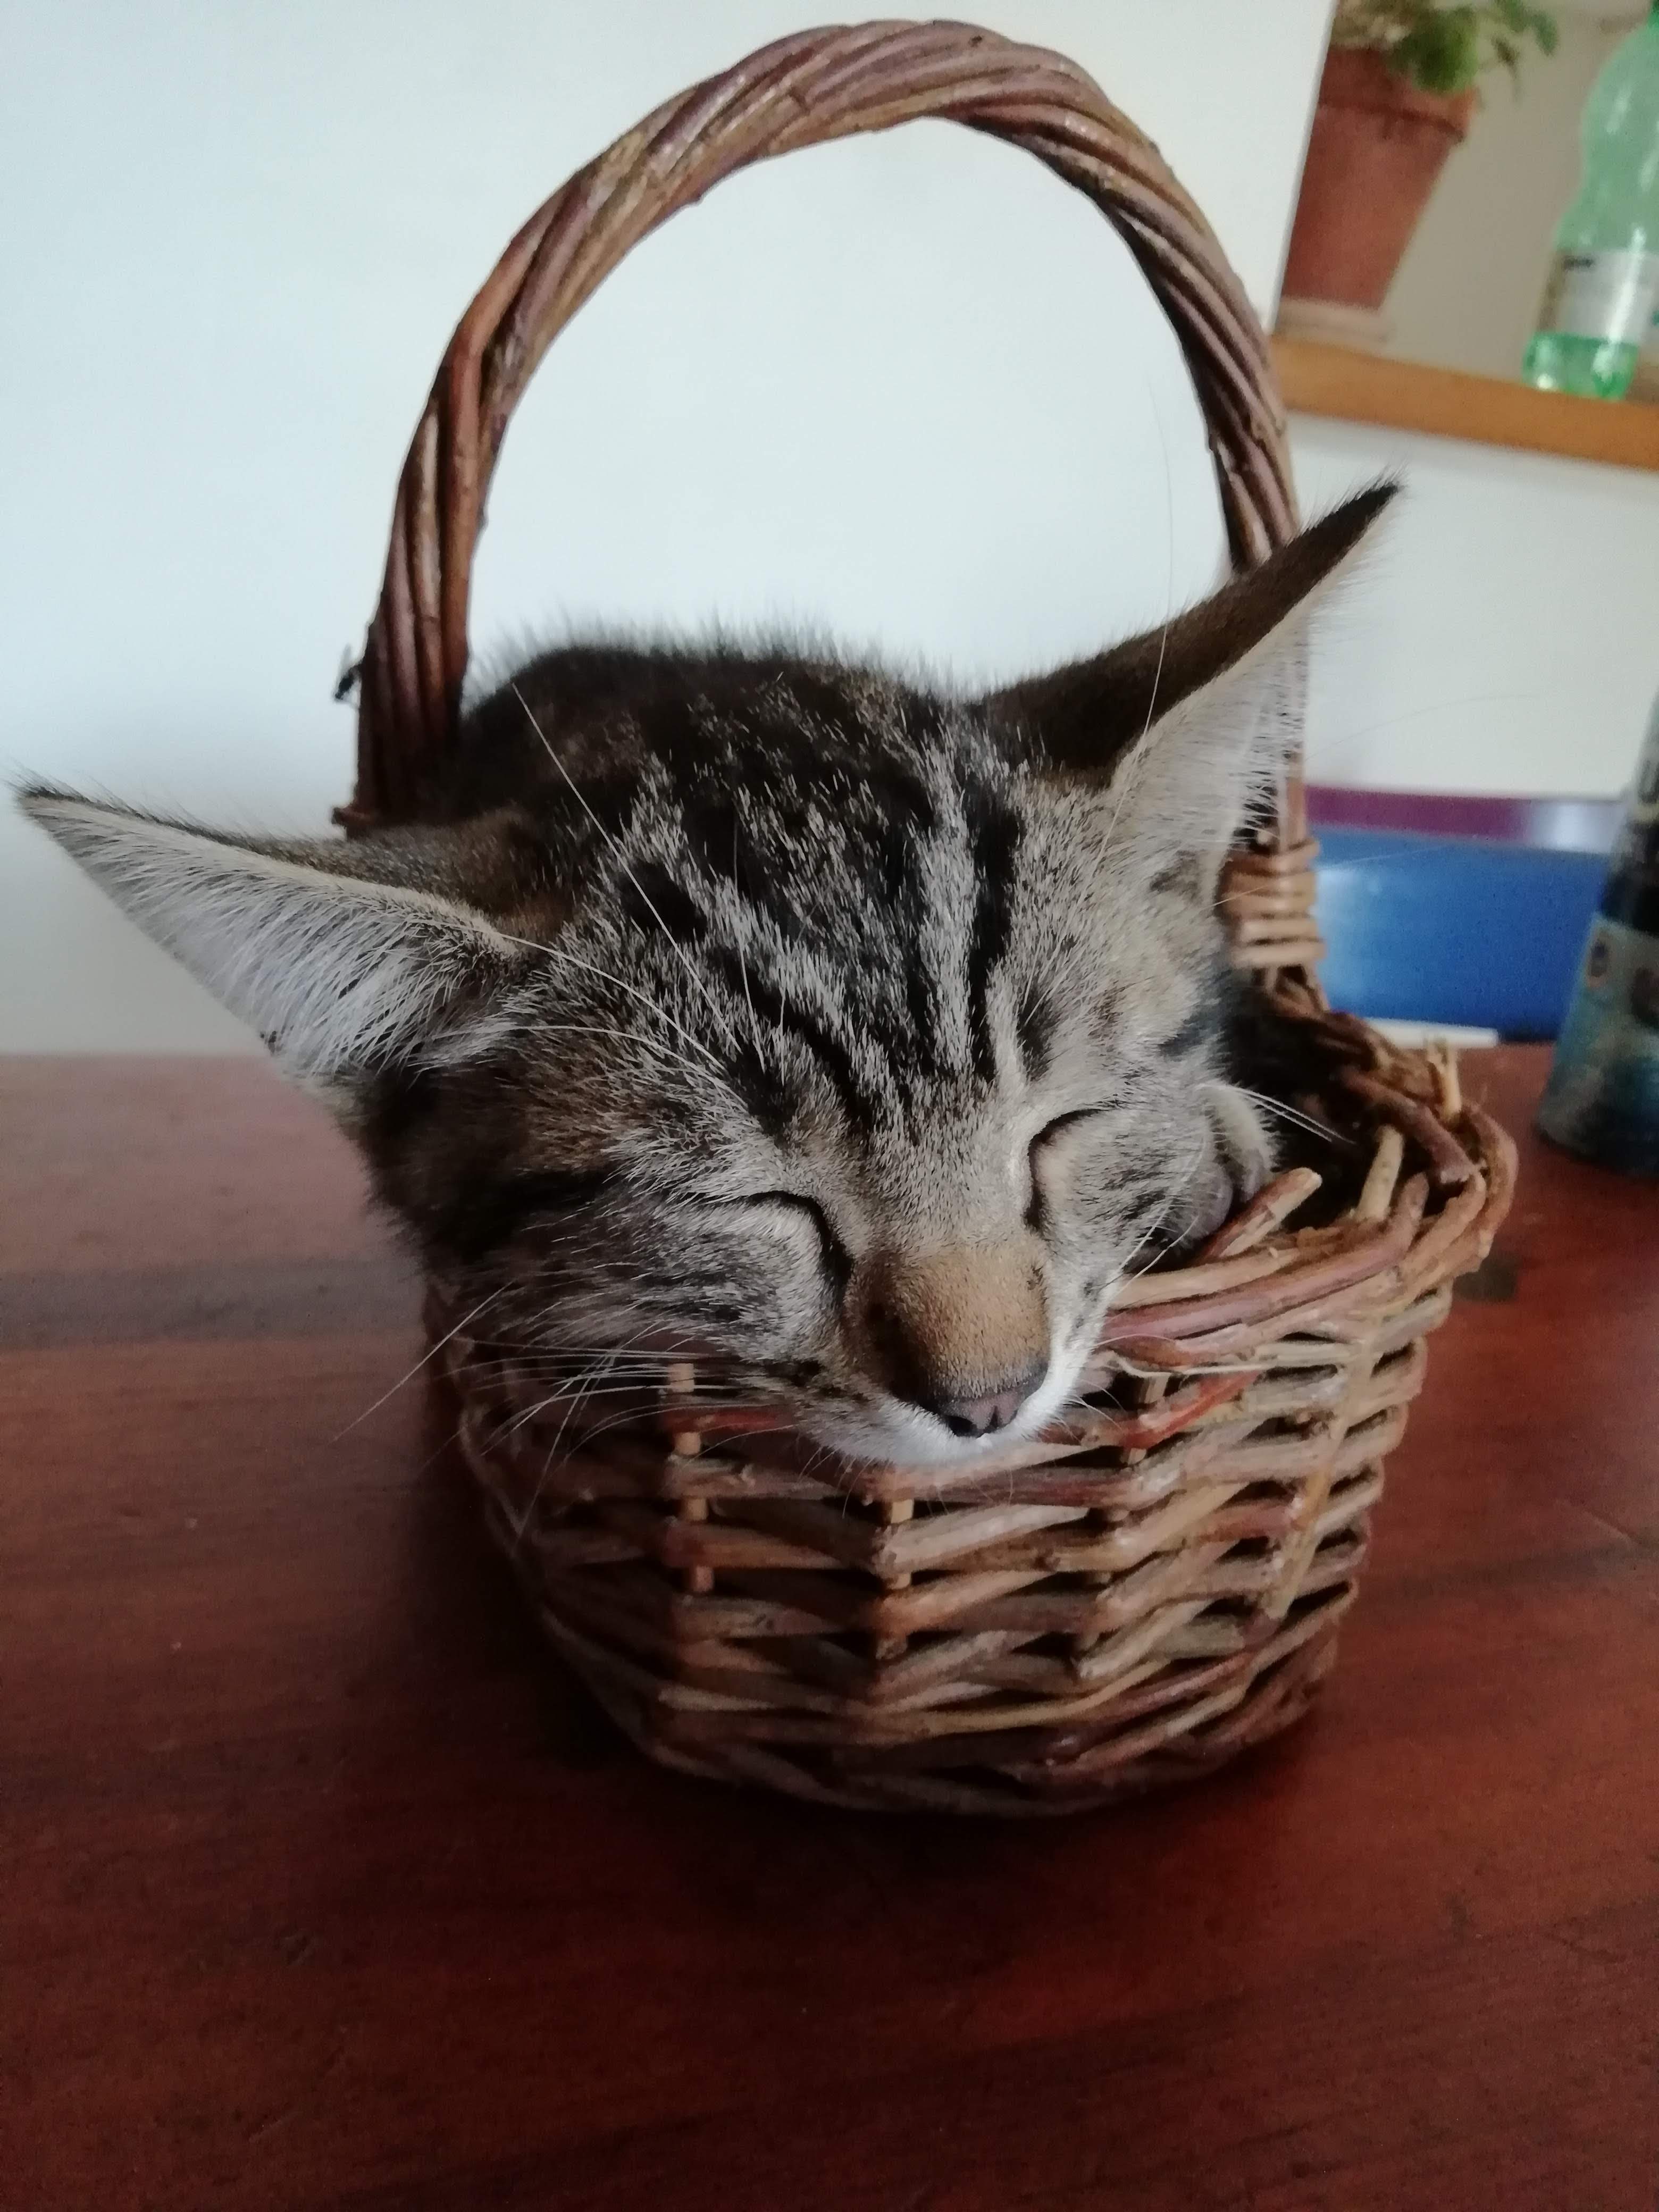 Weddenz, a tabby kitten, sleeping in a basket